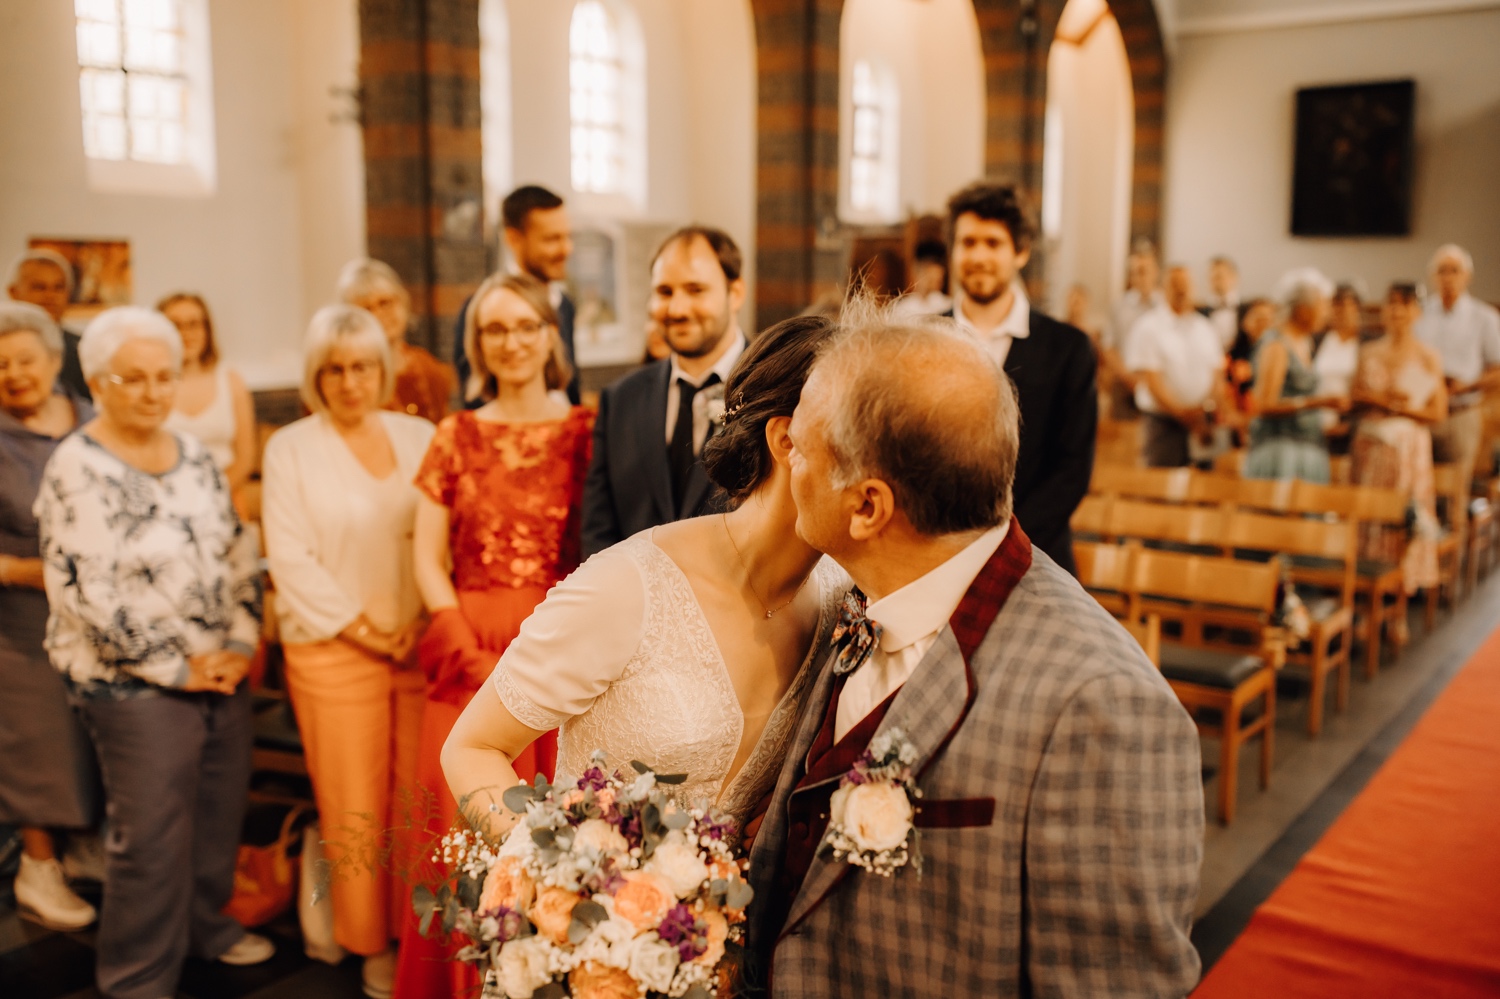 bruid kust vader op de wang in de kerk van Edegem